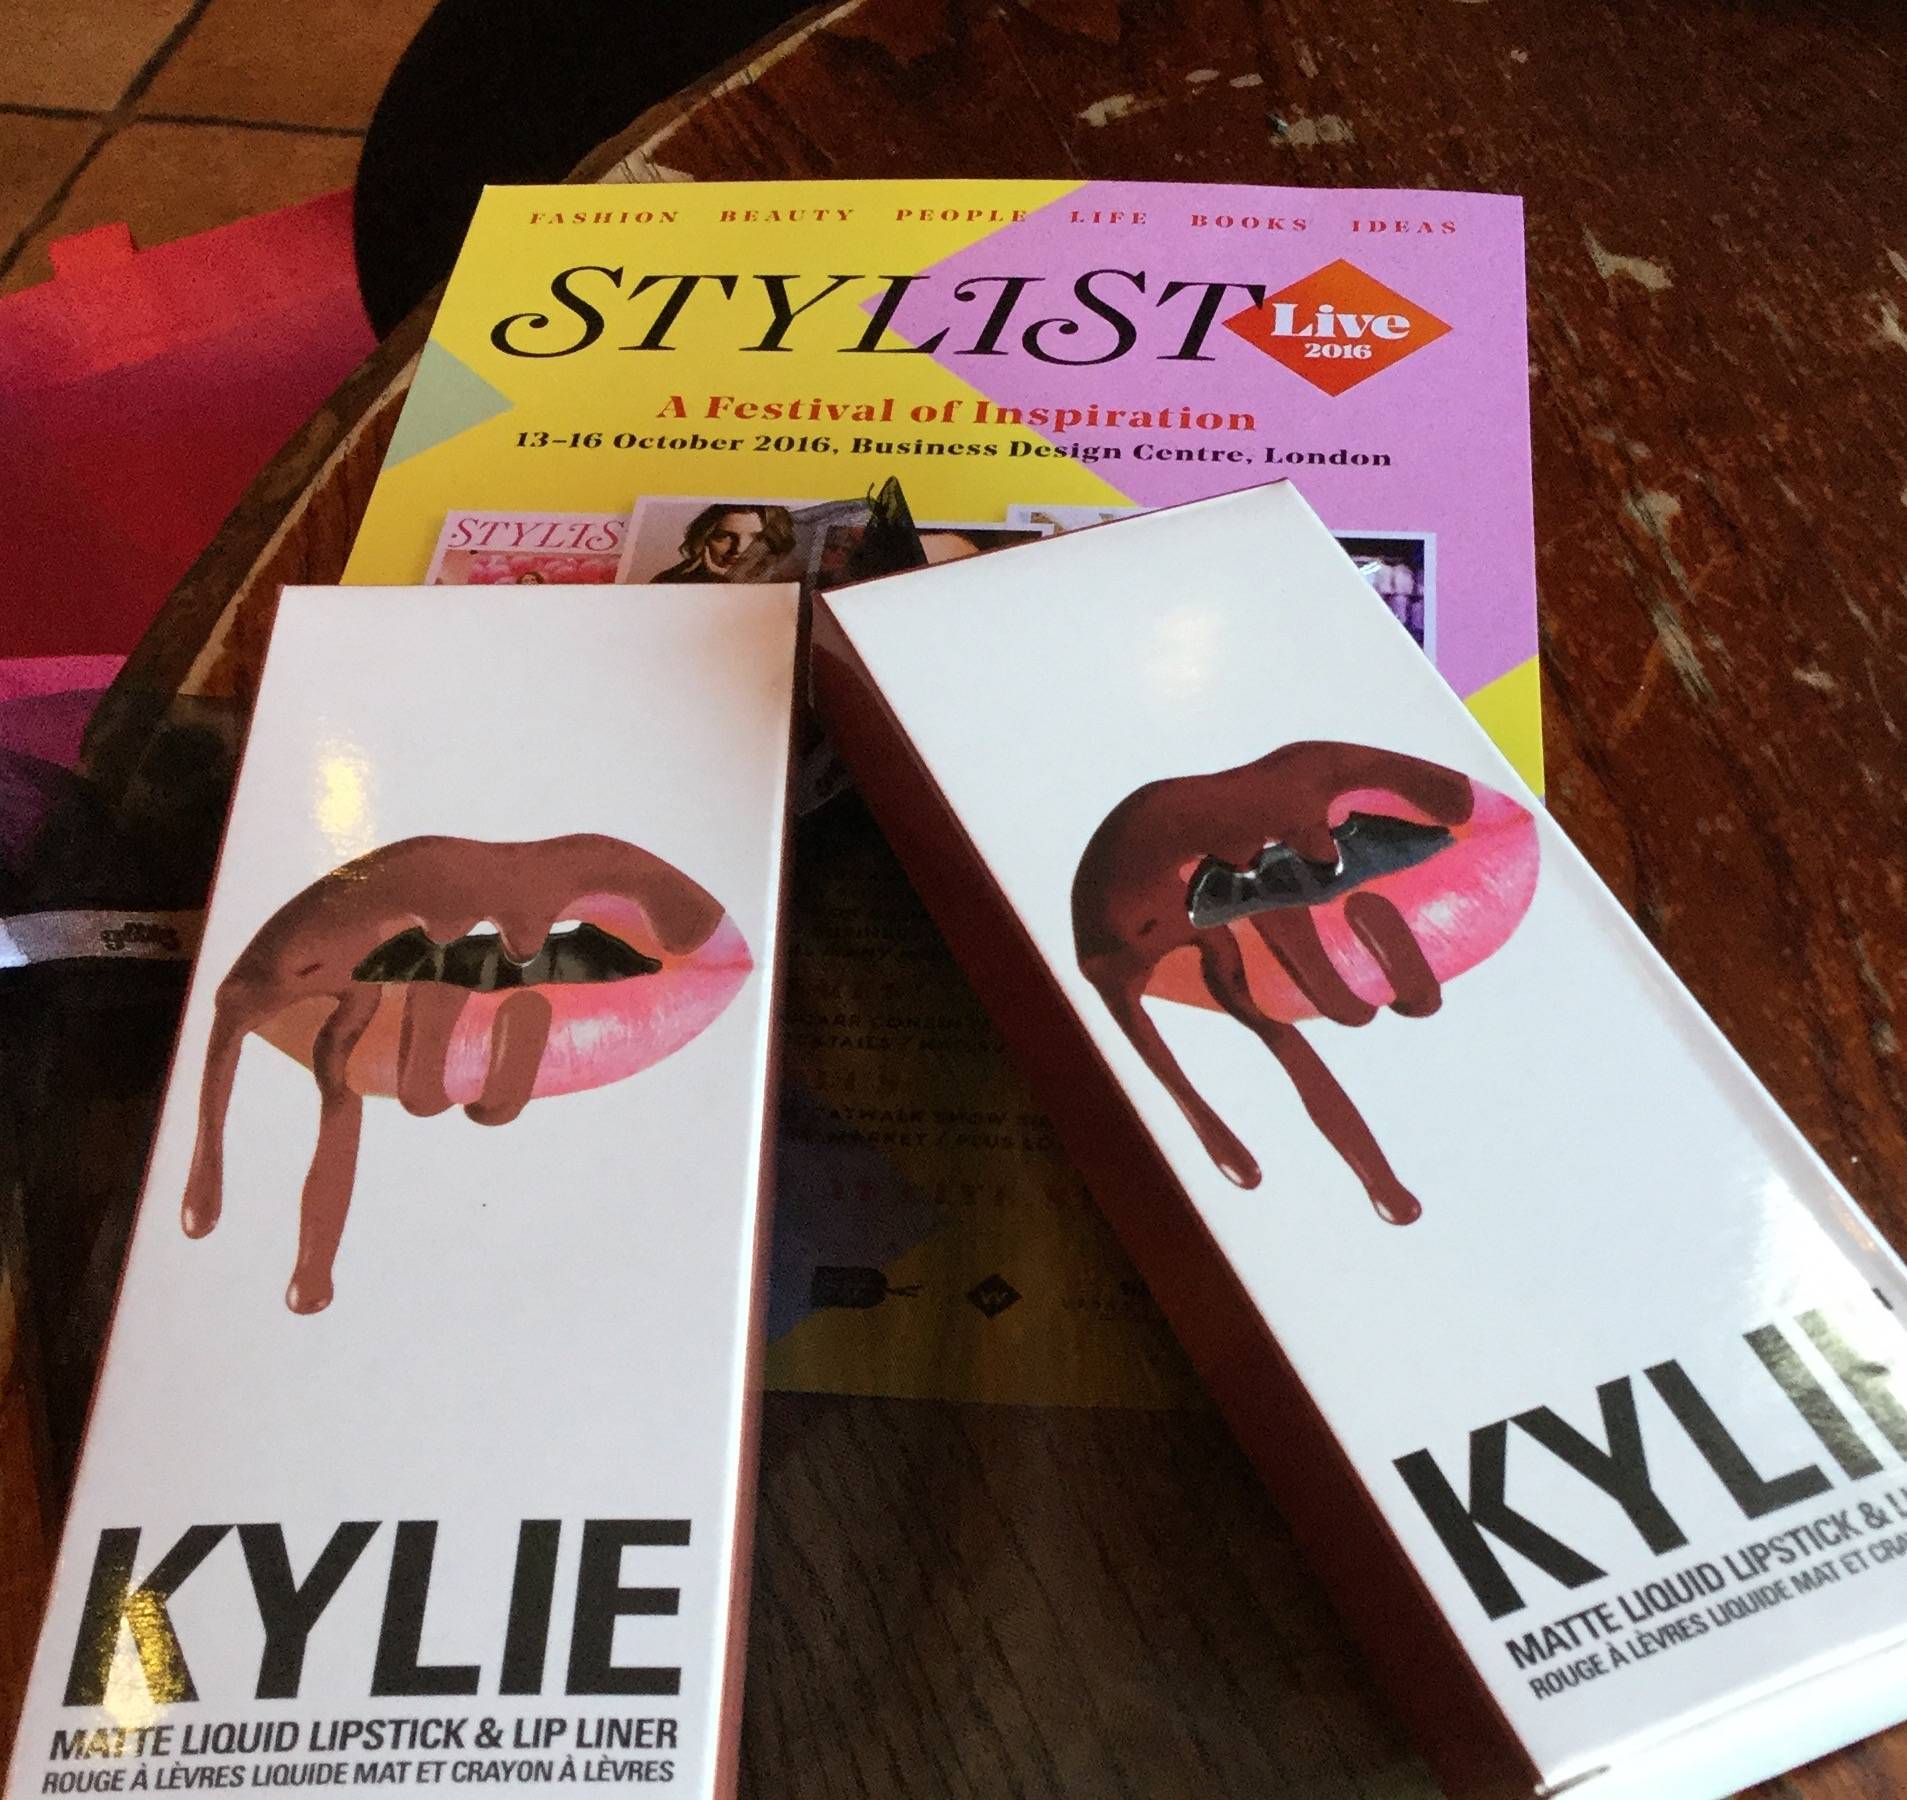 Kylie Lip kit